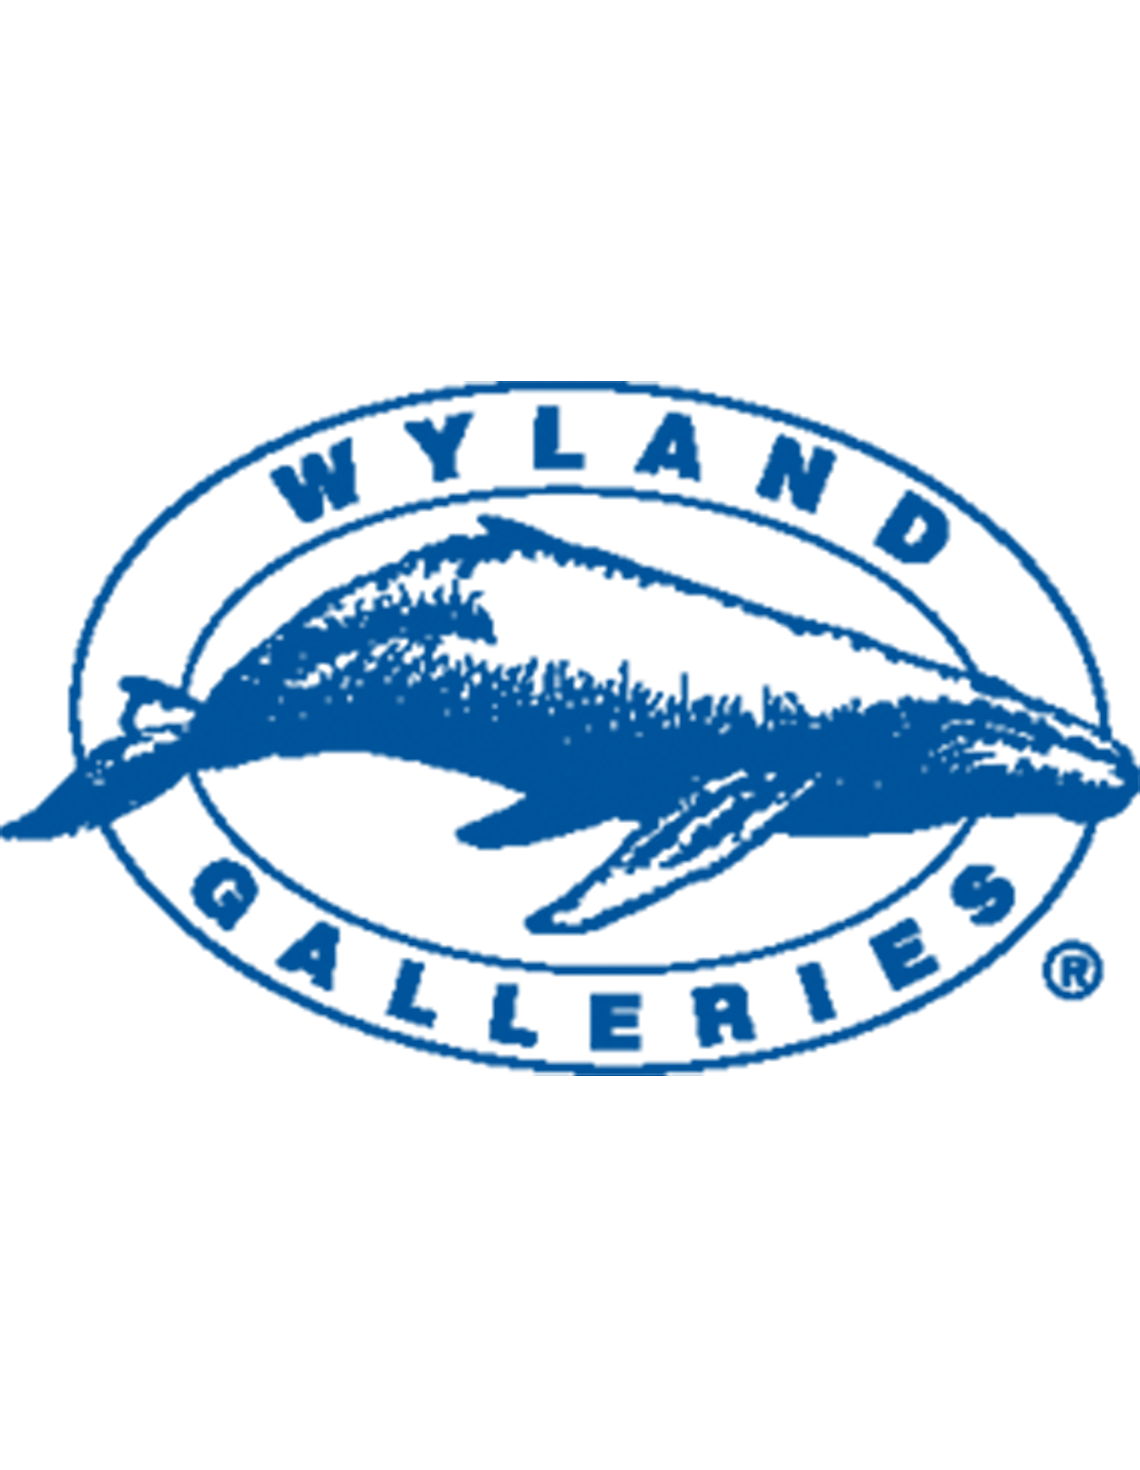 Wyland Galleries logo